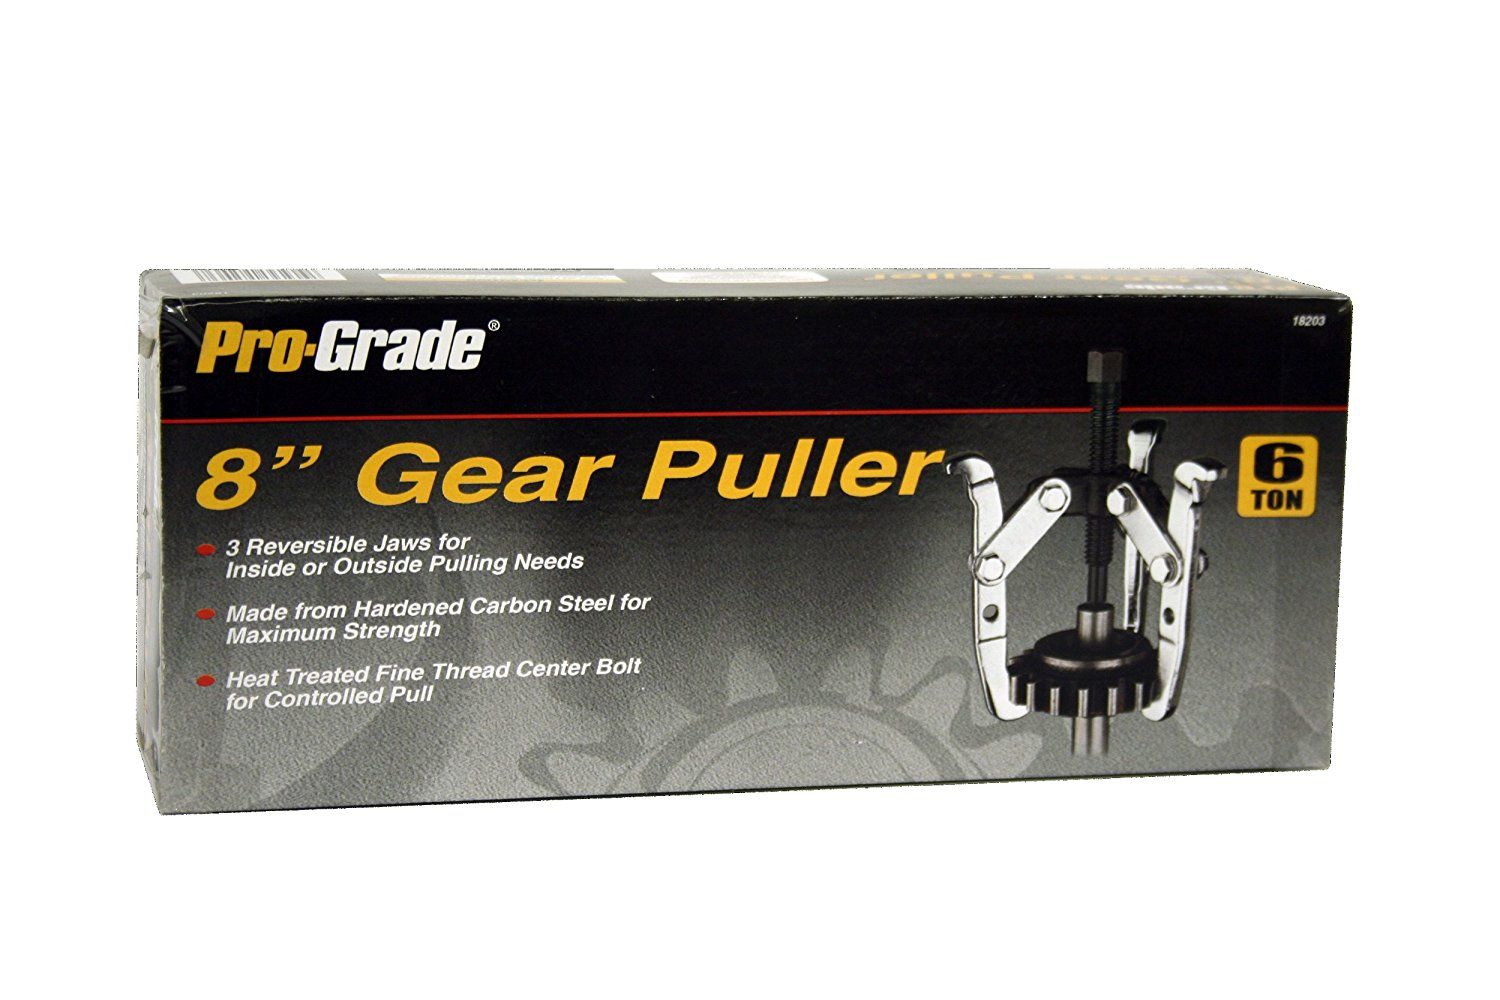 Pro-Grade 8" Gear Puller